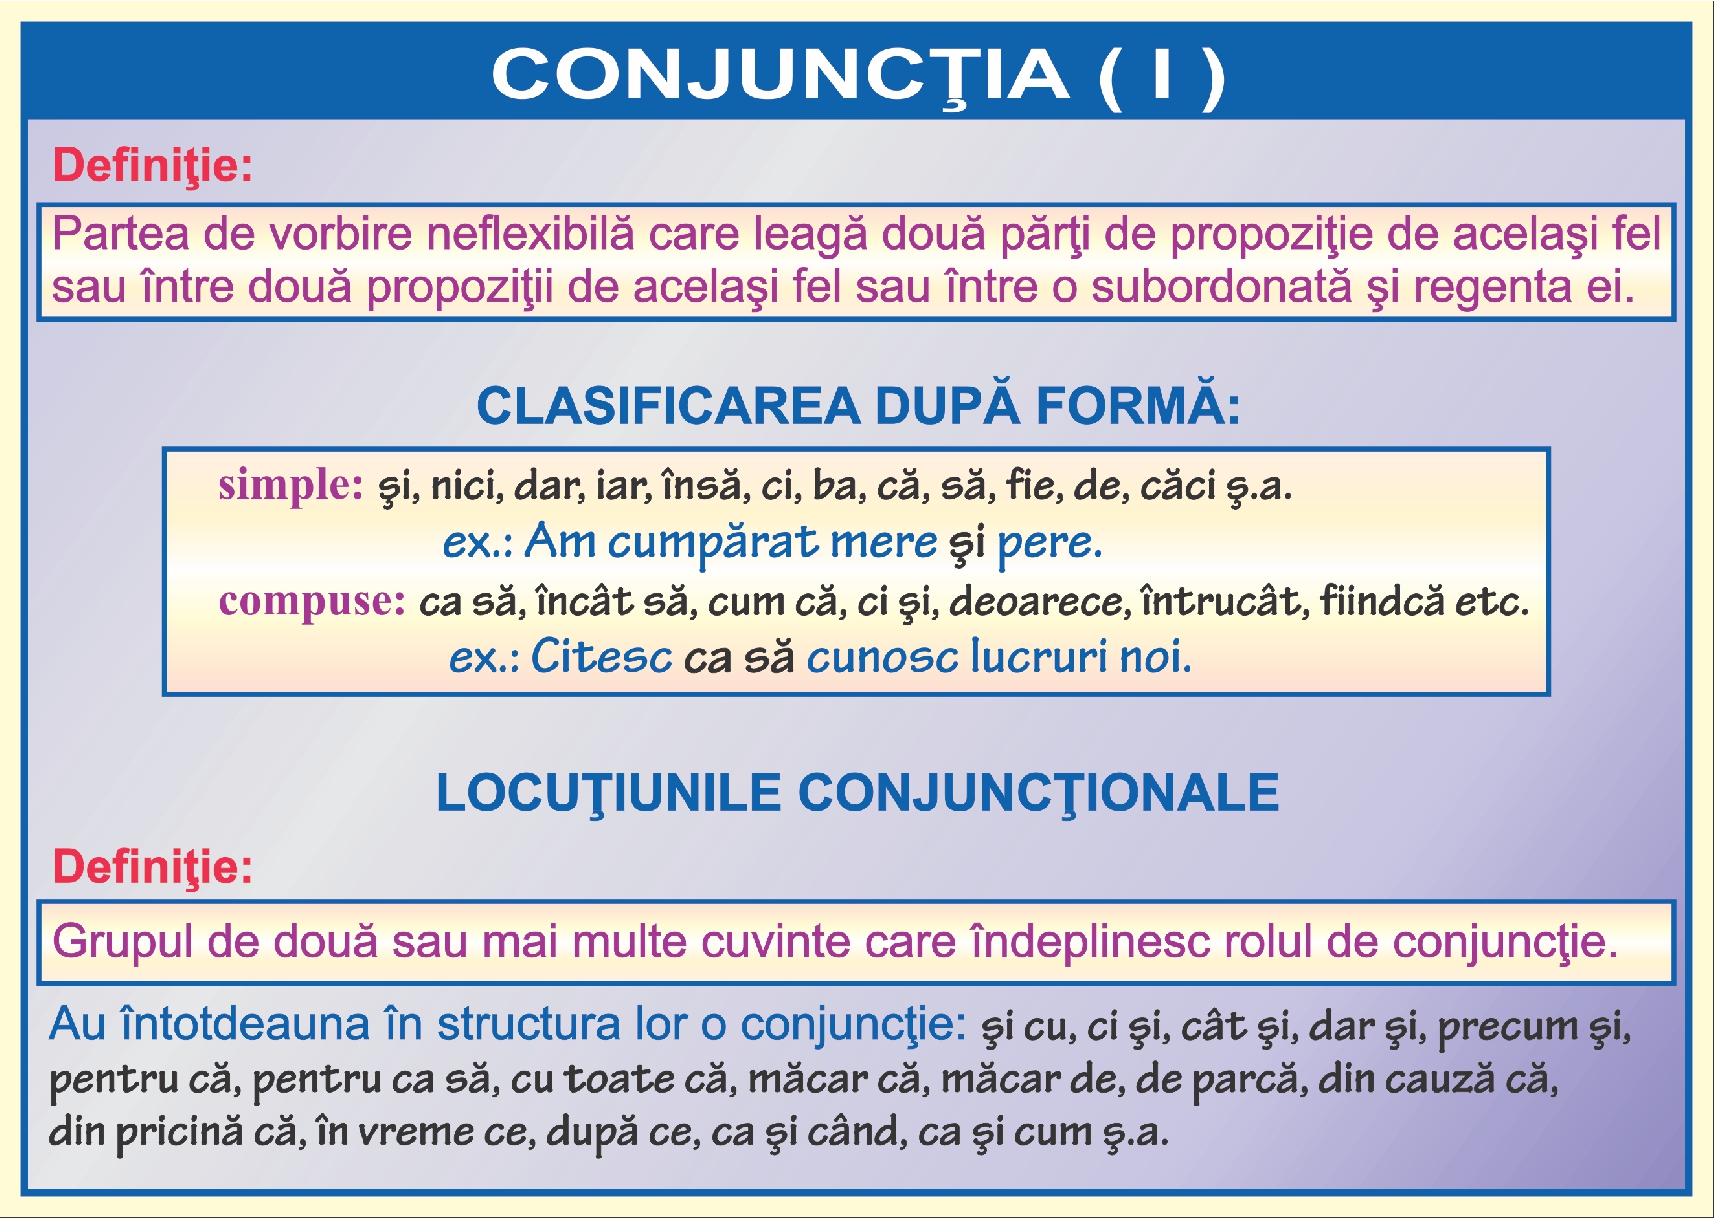 Conjunctia - I